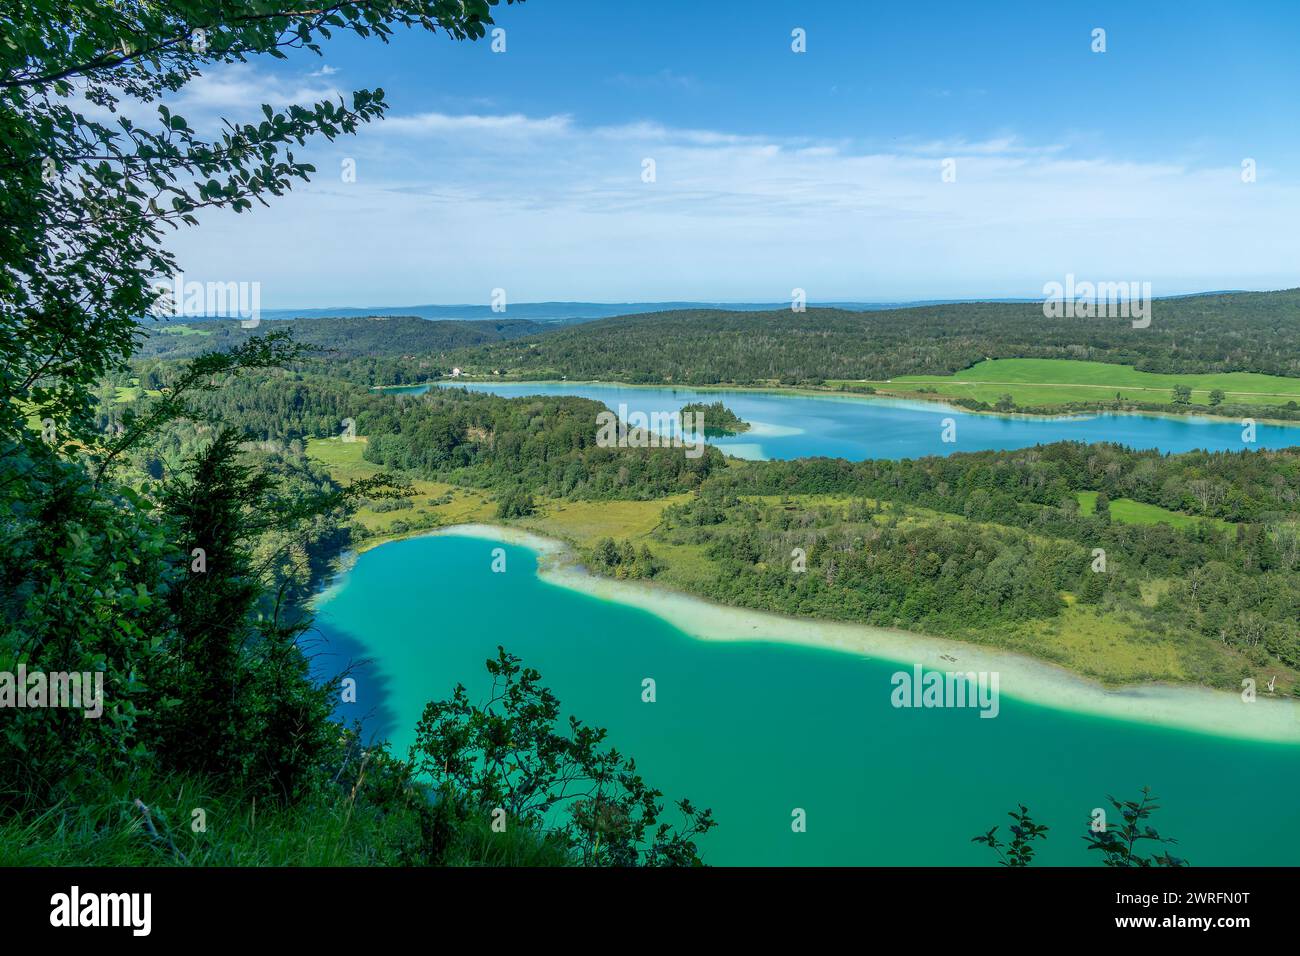 Lacs du Jura, vue panoramique du jurassique depuis le Belvedère des Quatres Lacs (point de vue de quatre lacs), France Banque D'Images